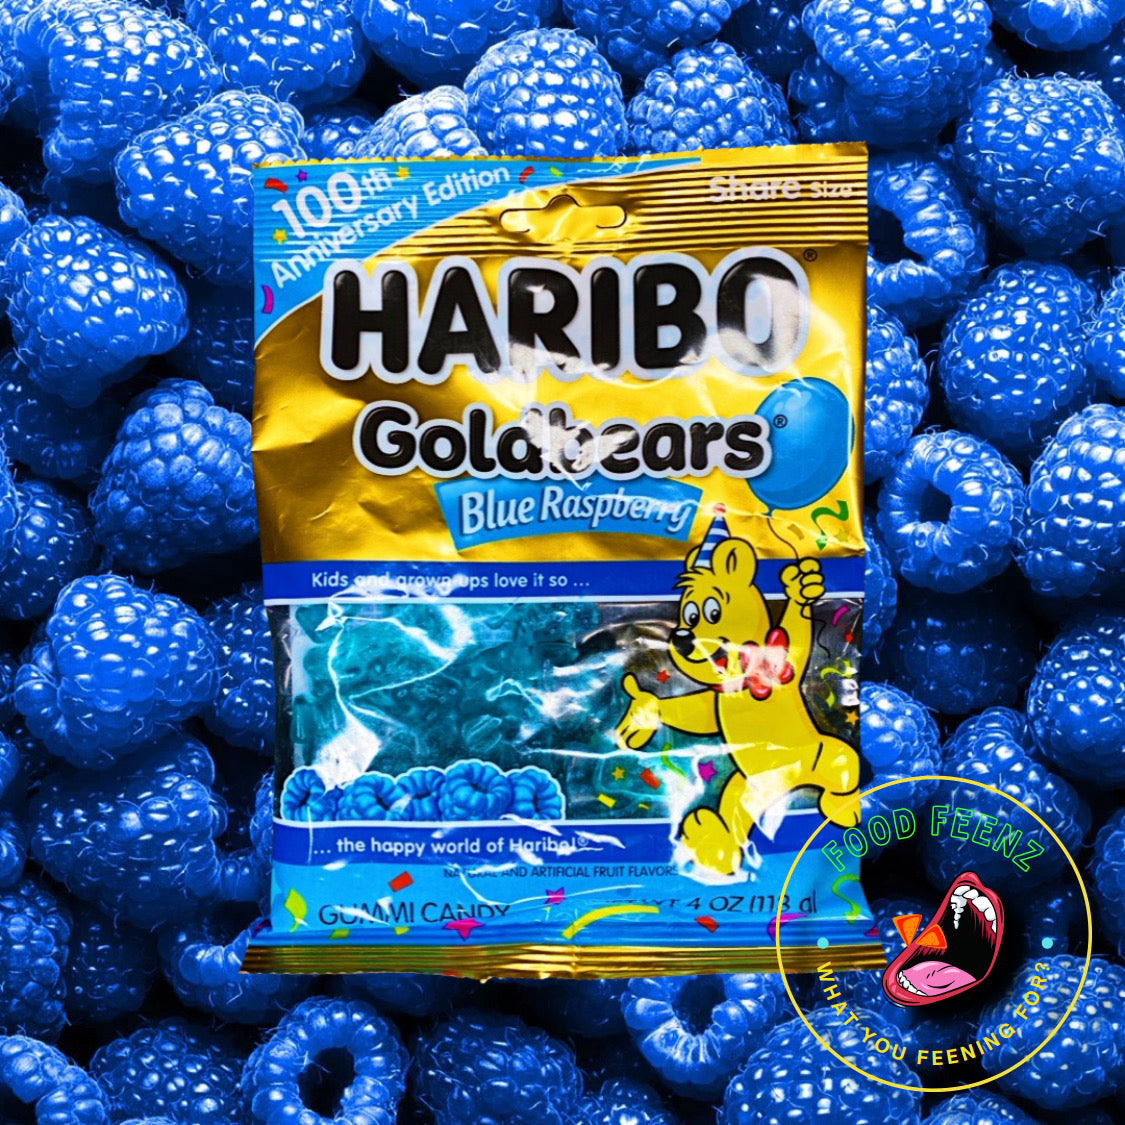 Haribo Goldbears Blue Raspberry Flavor